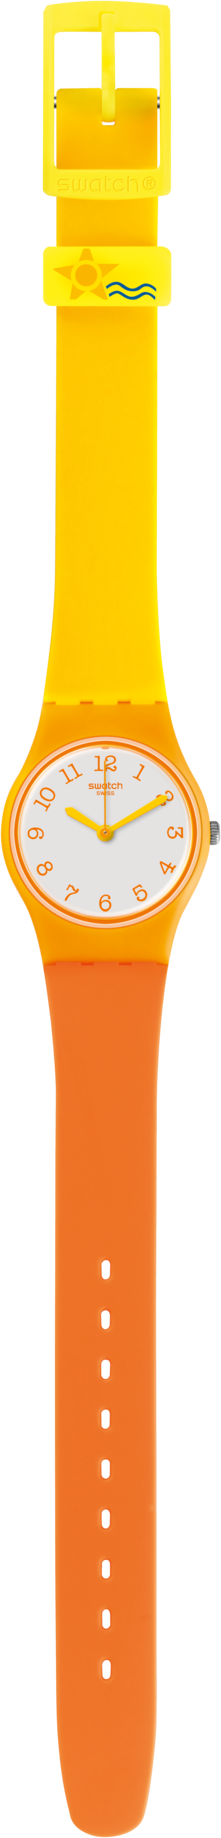 Наручные часы swatch, оранжевый